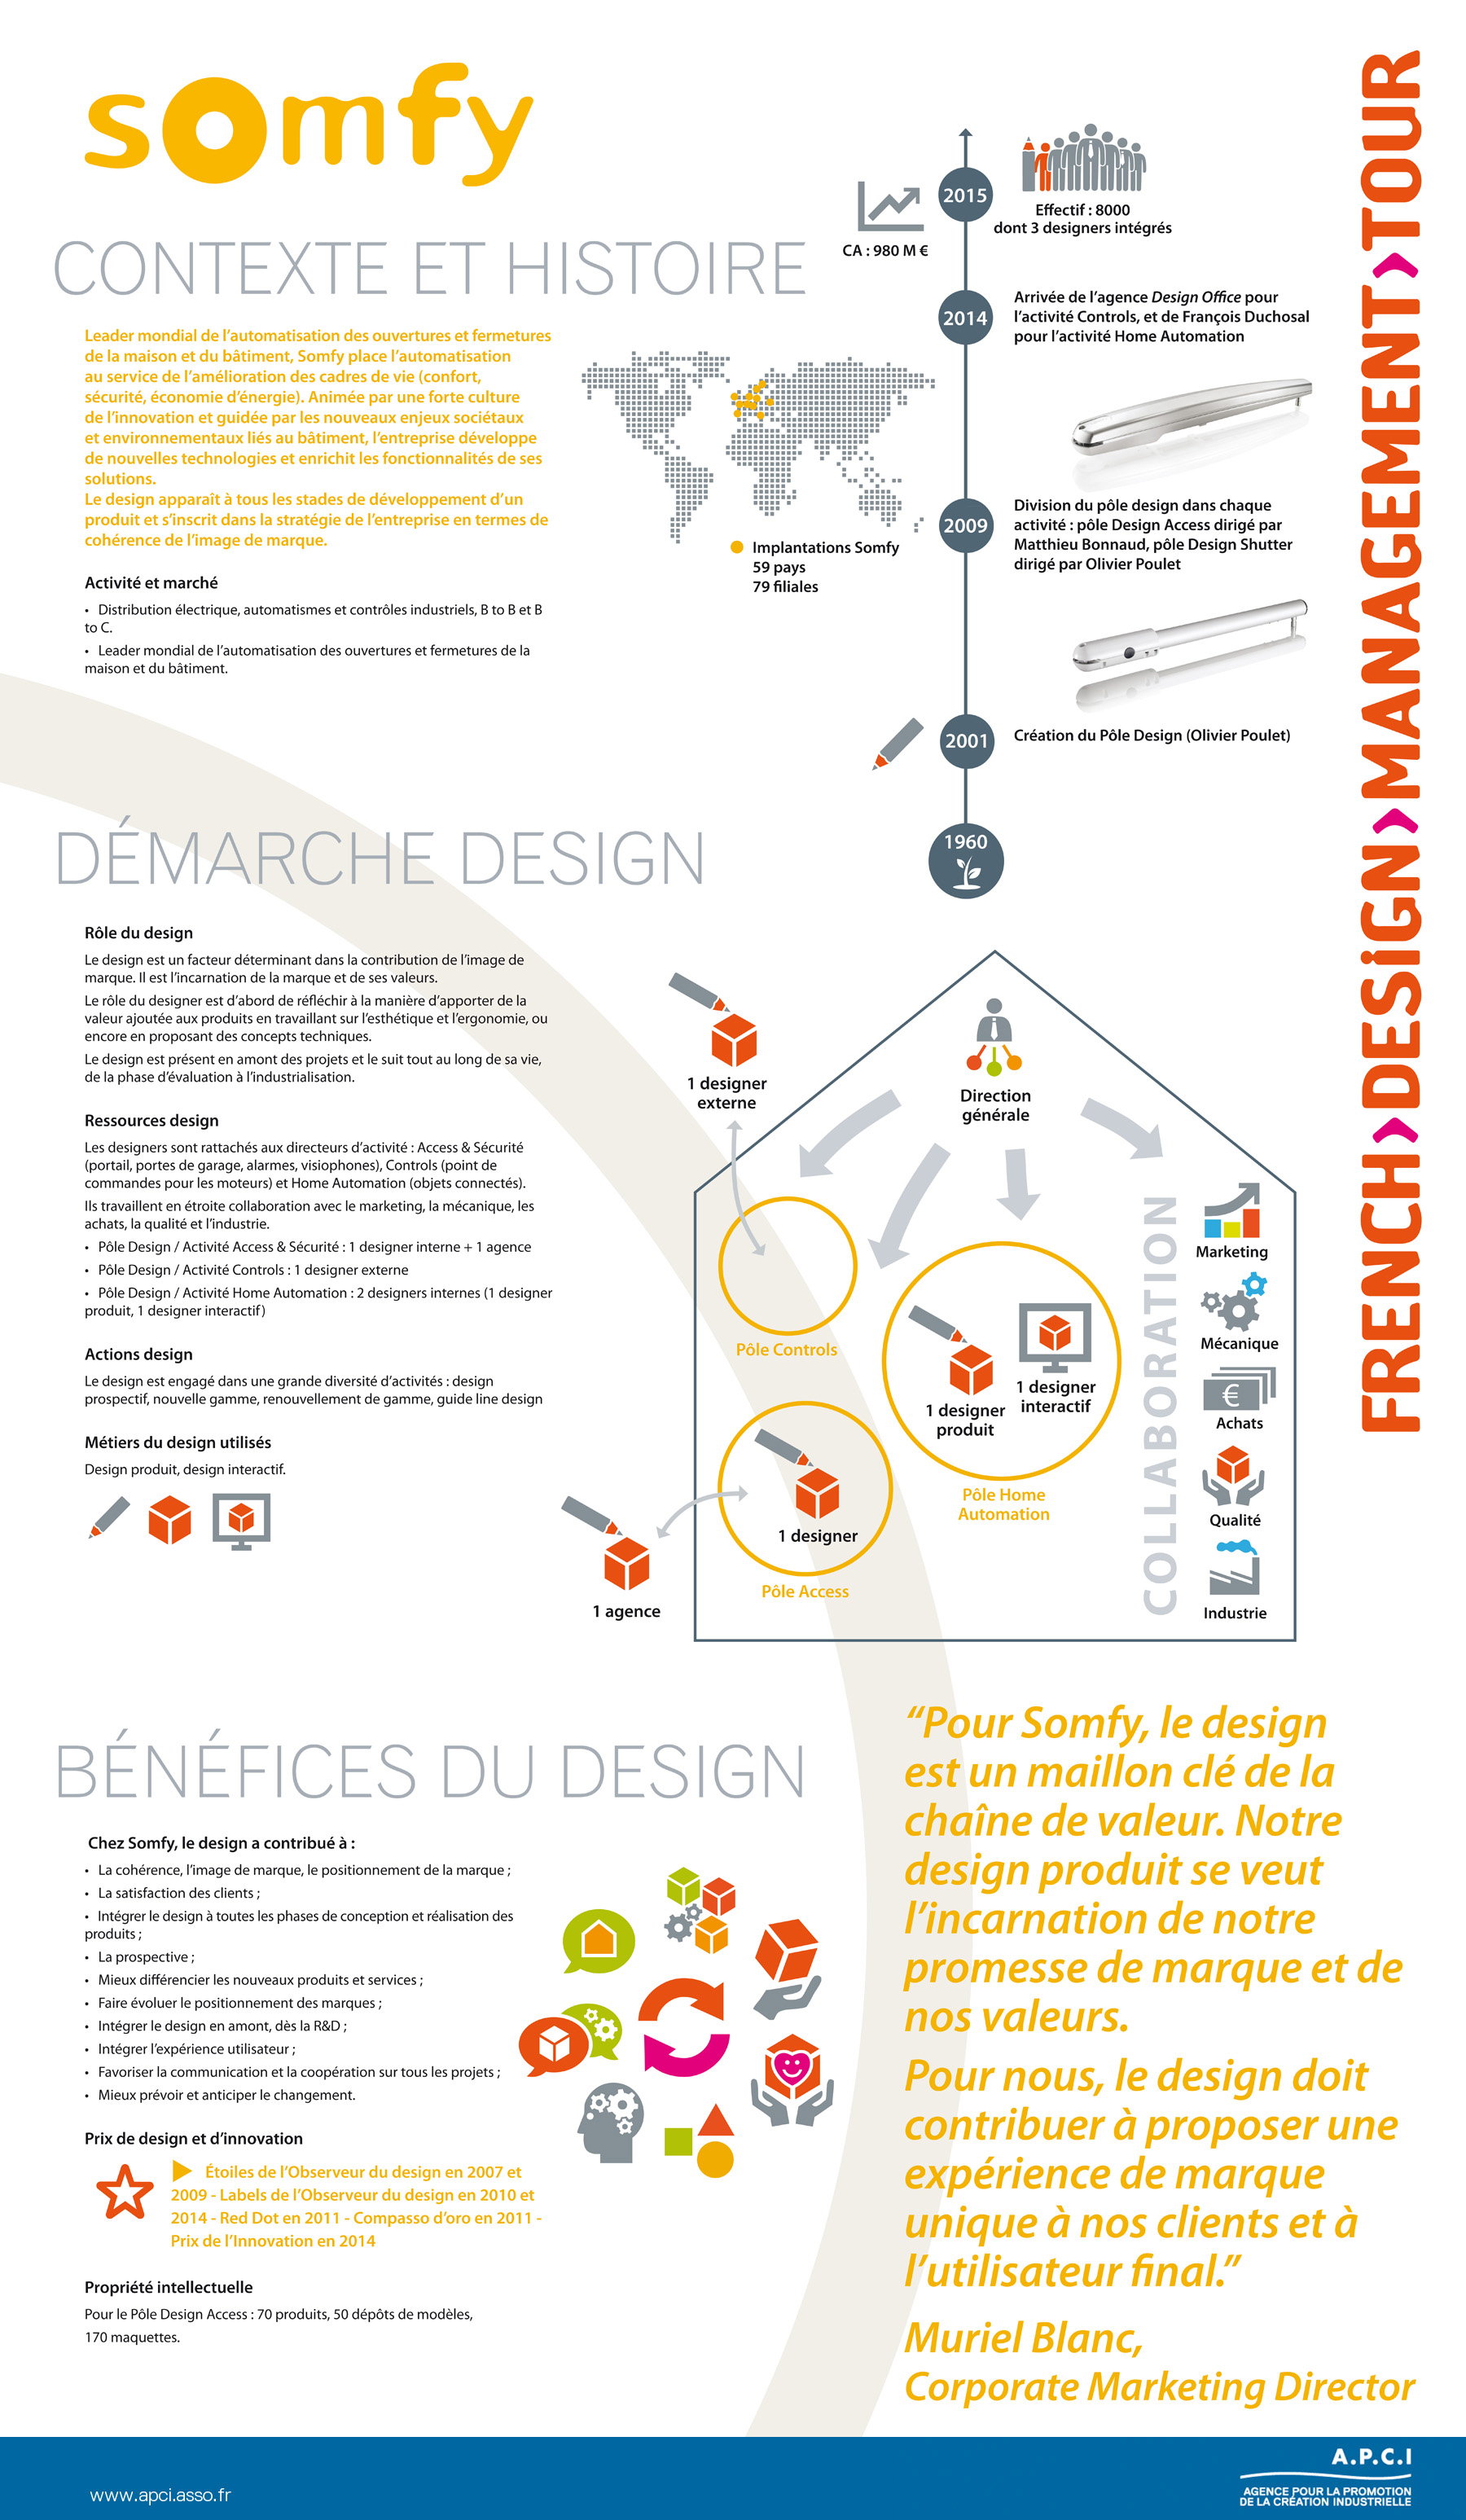 French Design Management Tour - Somfy